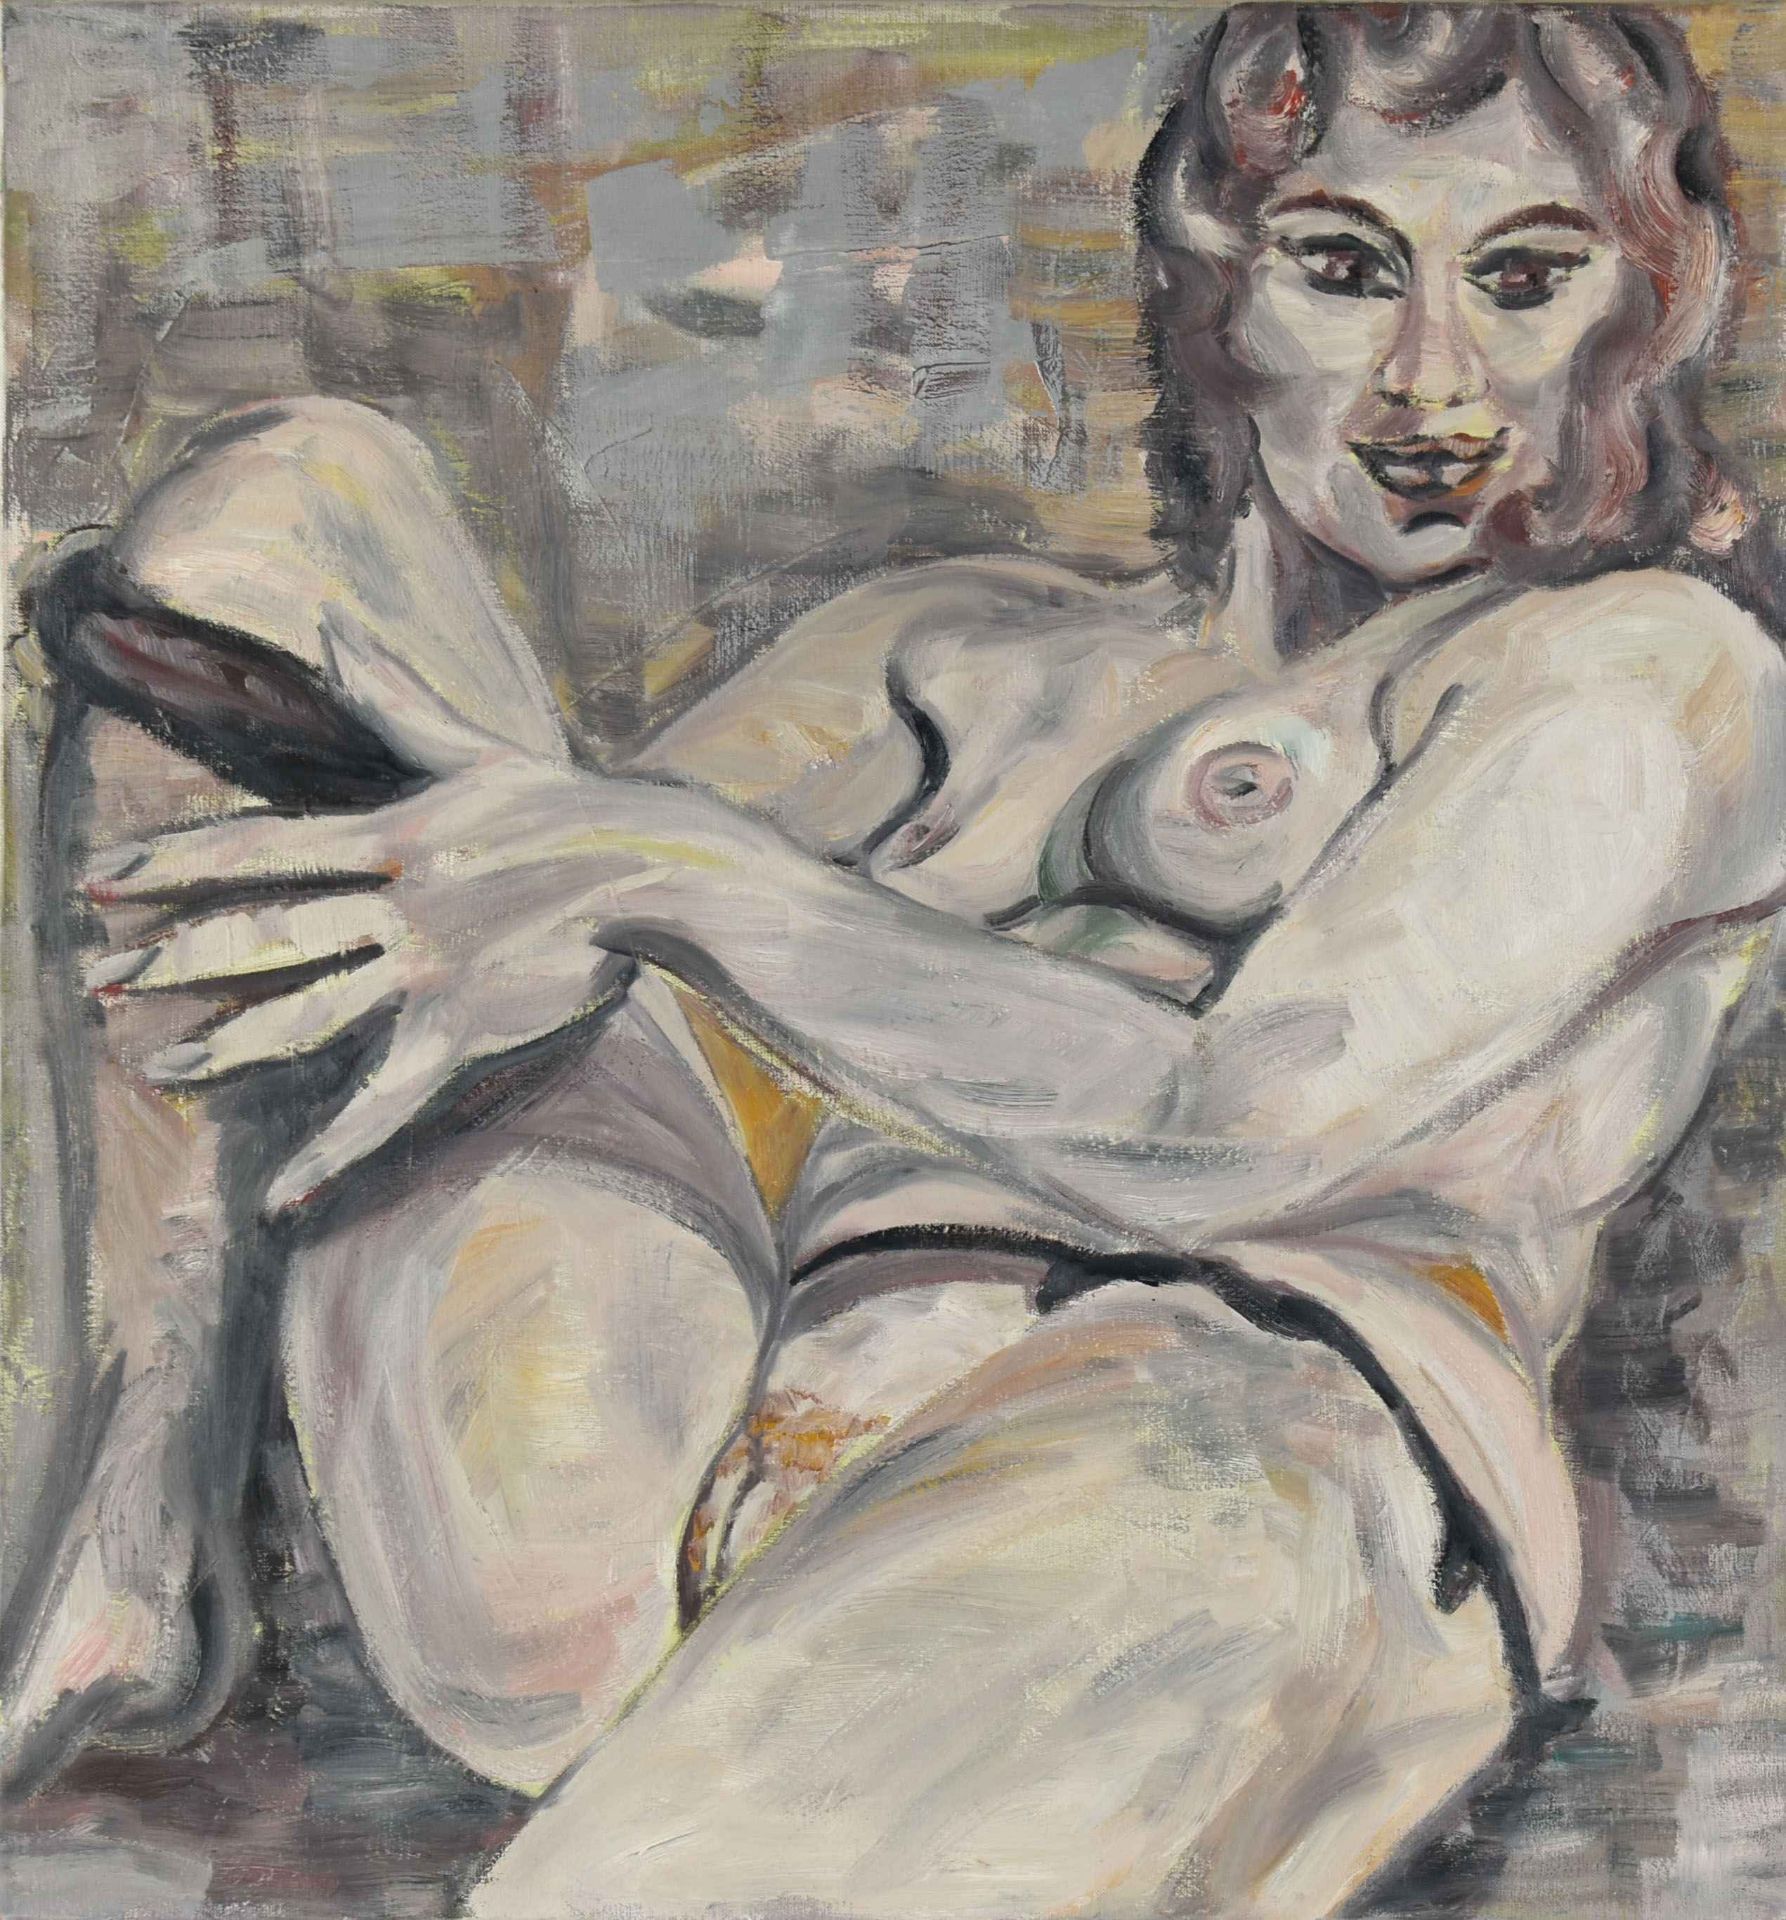 Unsigniert Öl/Lwd., Darstellung eines sitzenden weiblichen Aktes, den Betrachter frontal anschauend, - Bild 2 aus 2